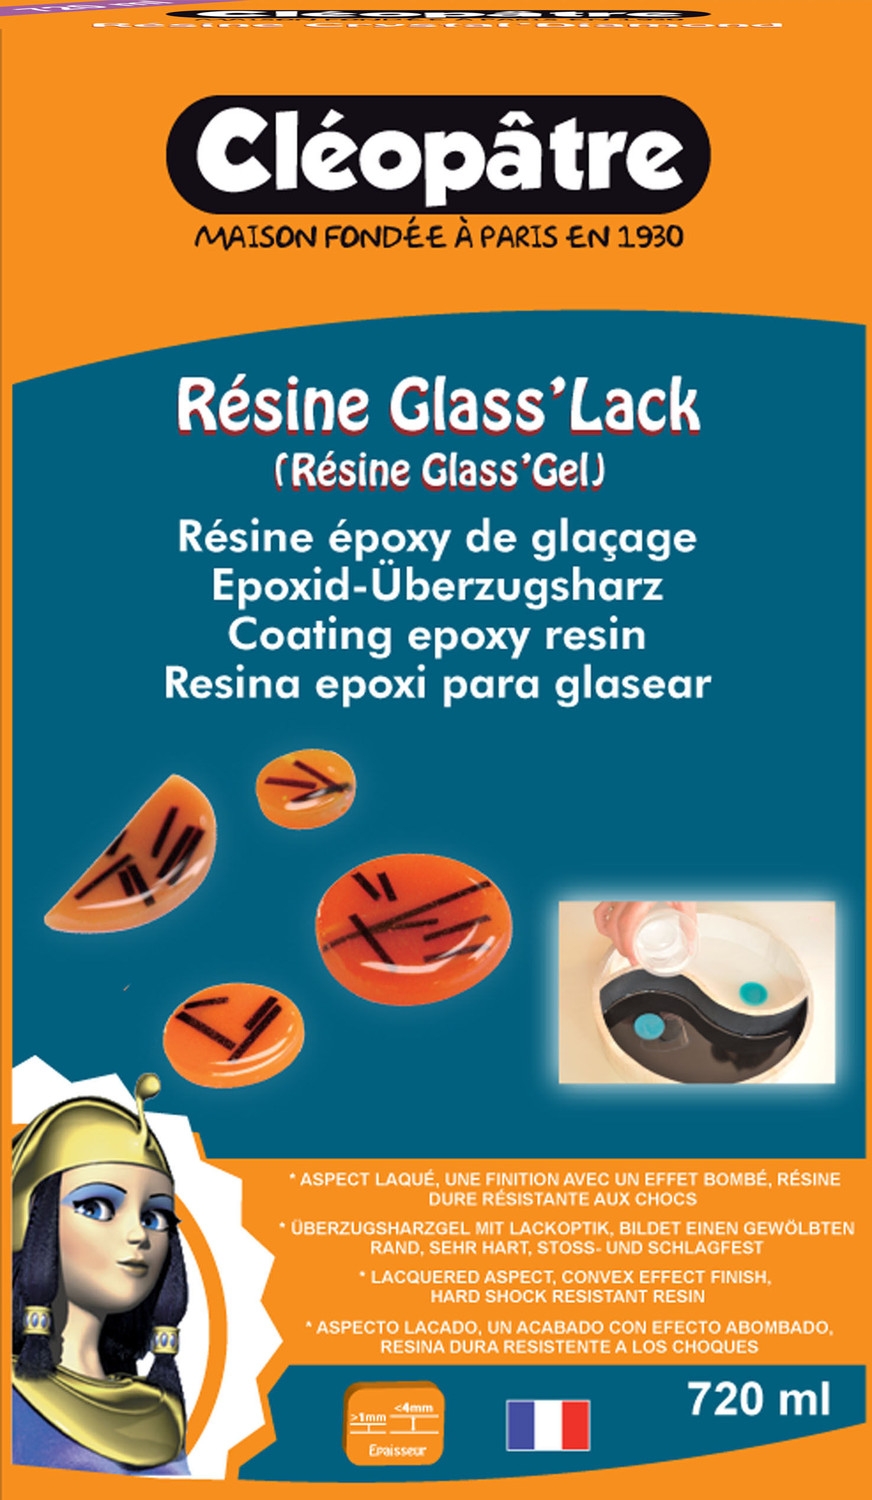 Résine Glass'Lack Gel Cléopatre nouvelle génération 720 ml sans bulle